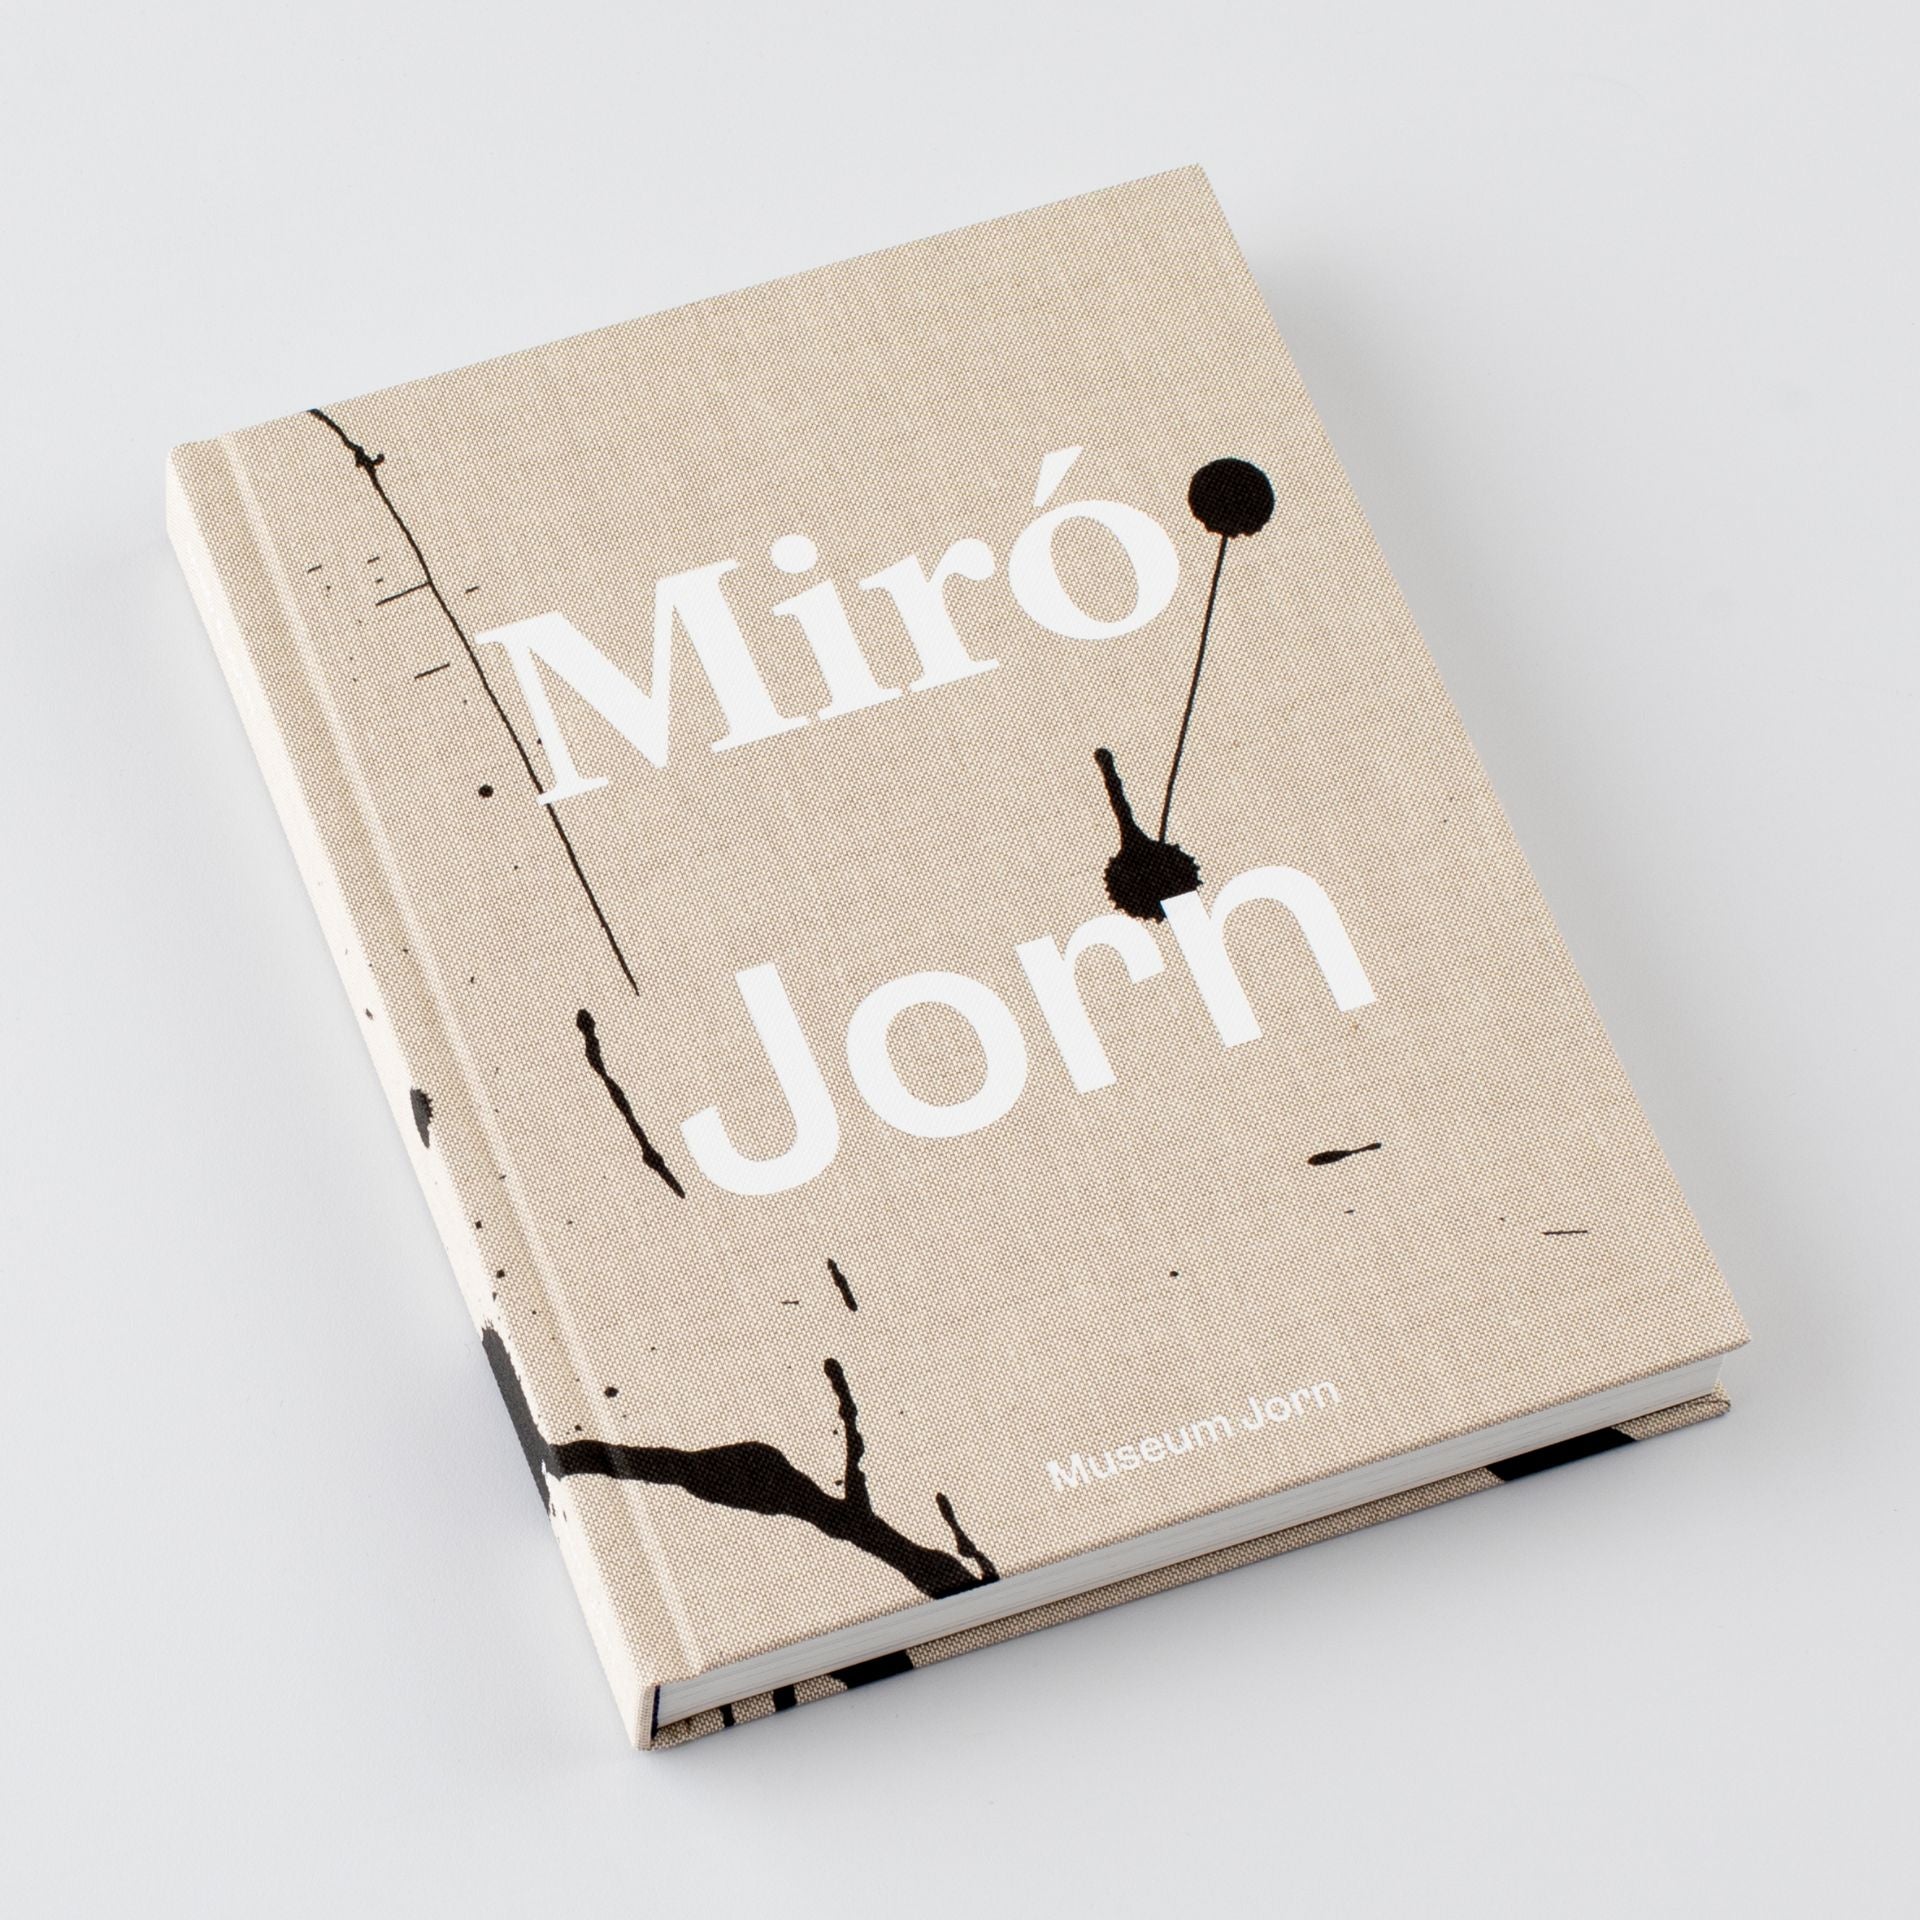 Miró & Jorn